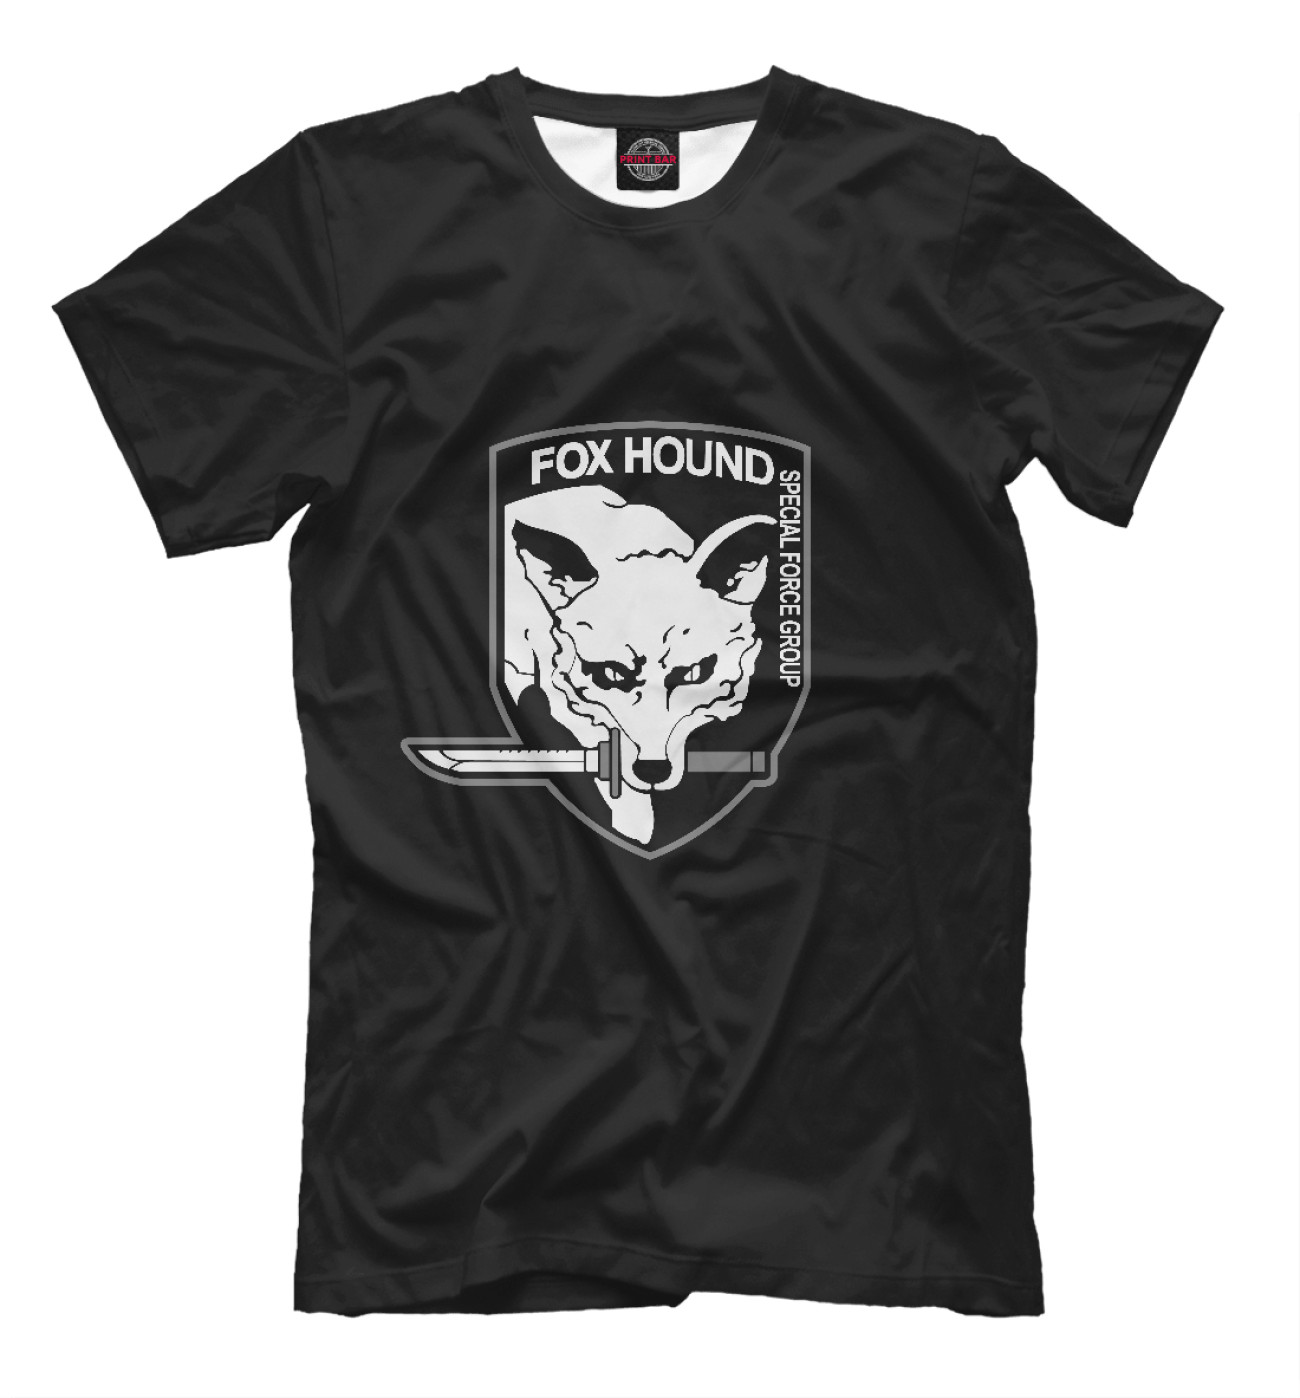 Мужская Футболка Foxhound, артикул: MTG-364726-fut-2